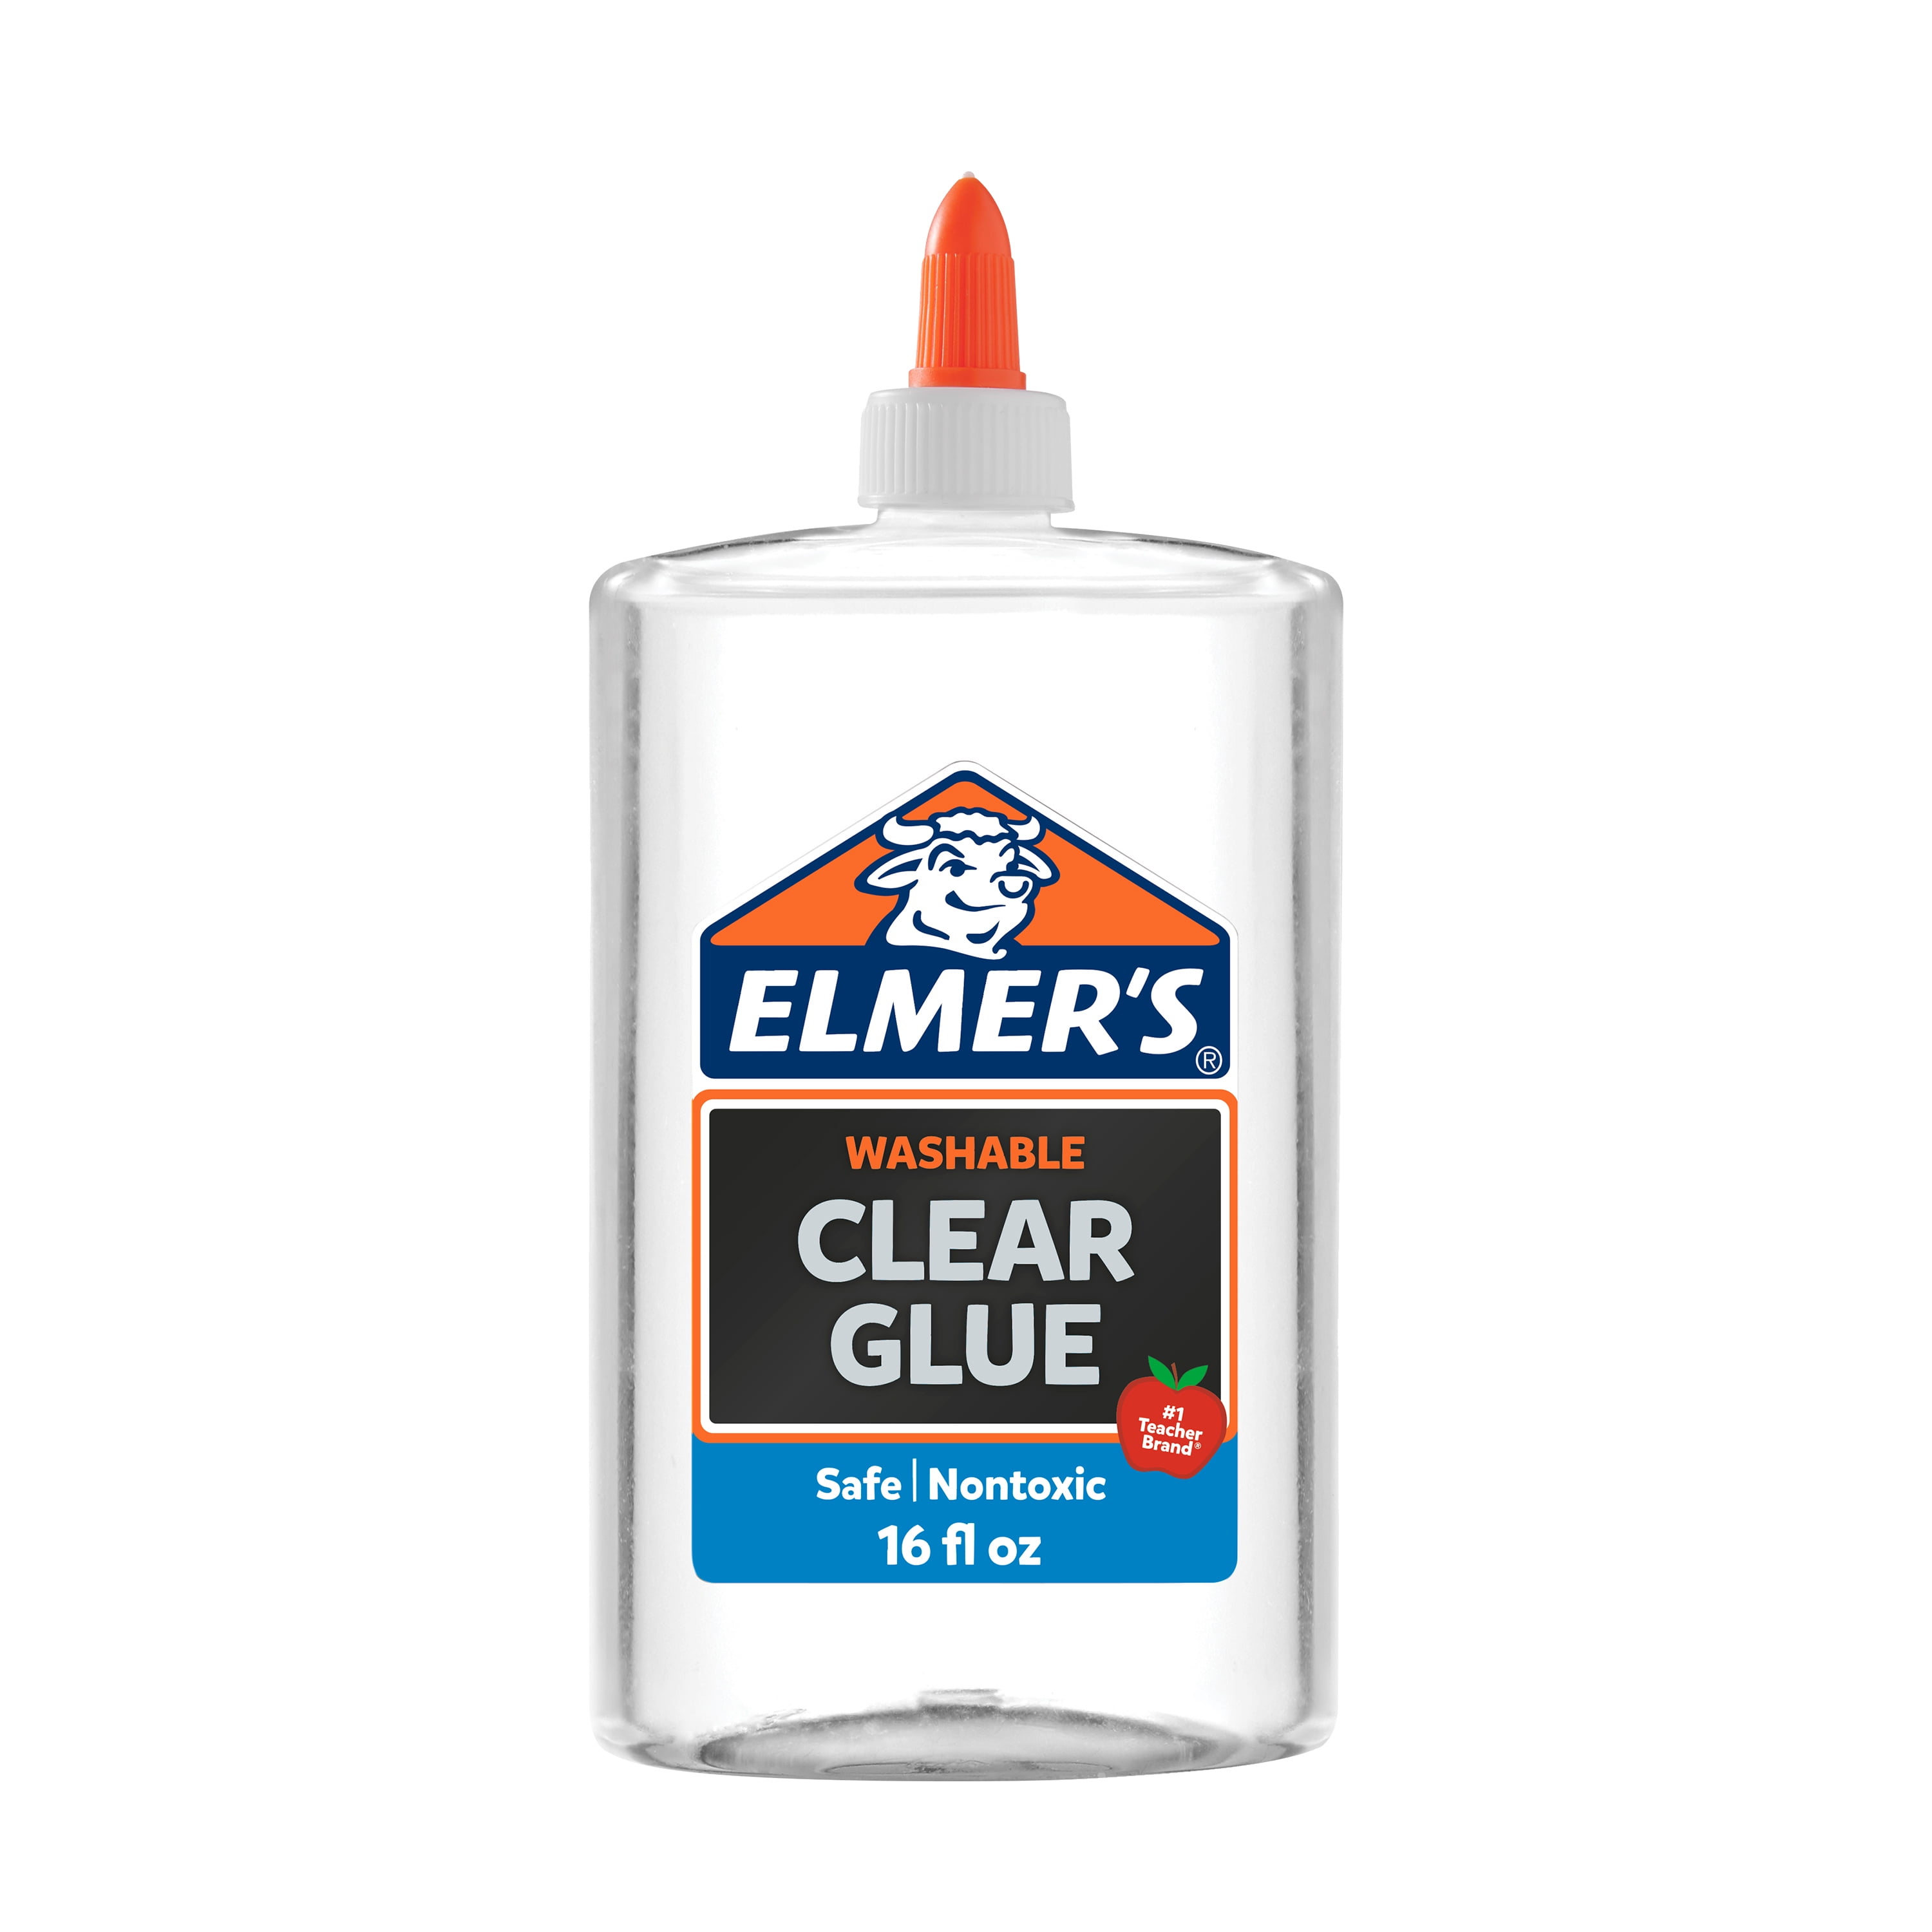 TESTING NEW ELMER'S GLUE FOR SLIME!!! GLOW IN THE DARK GLUE! COLORED CLEAR  GLUE! 💦 